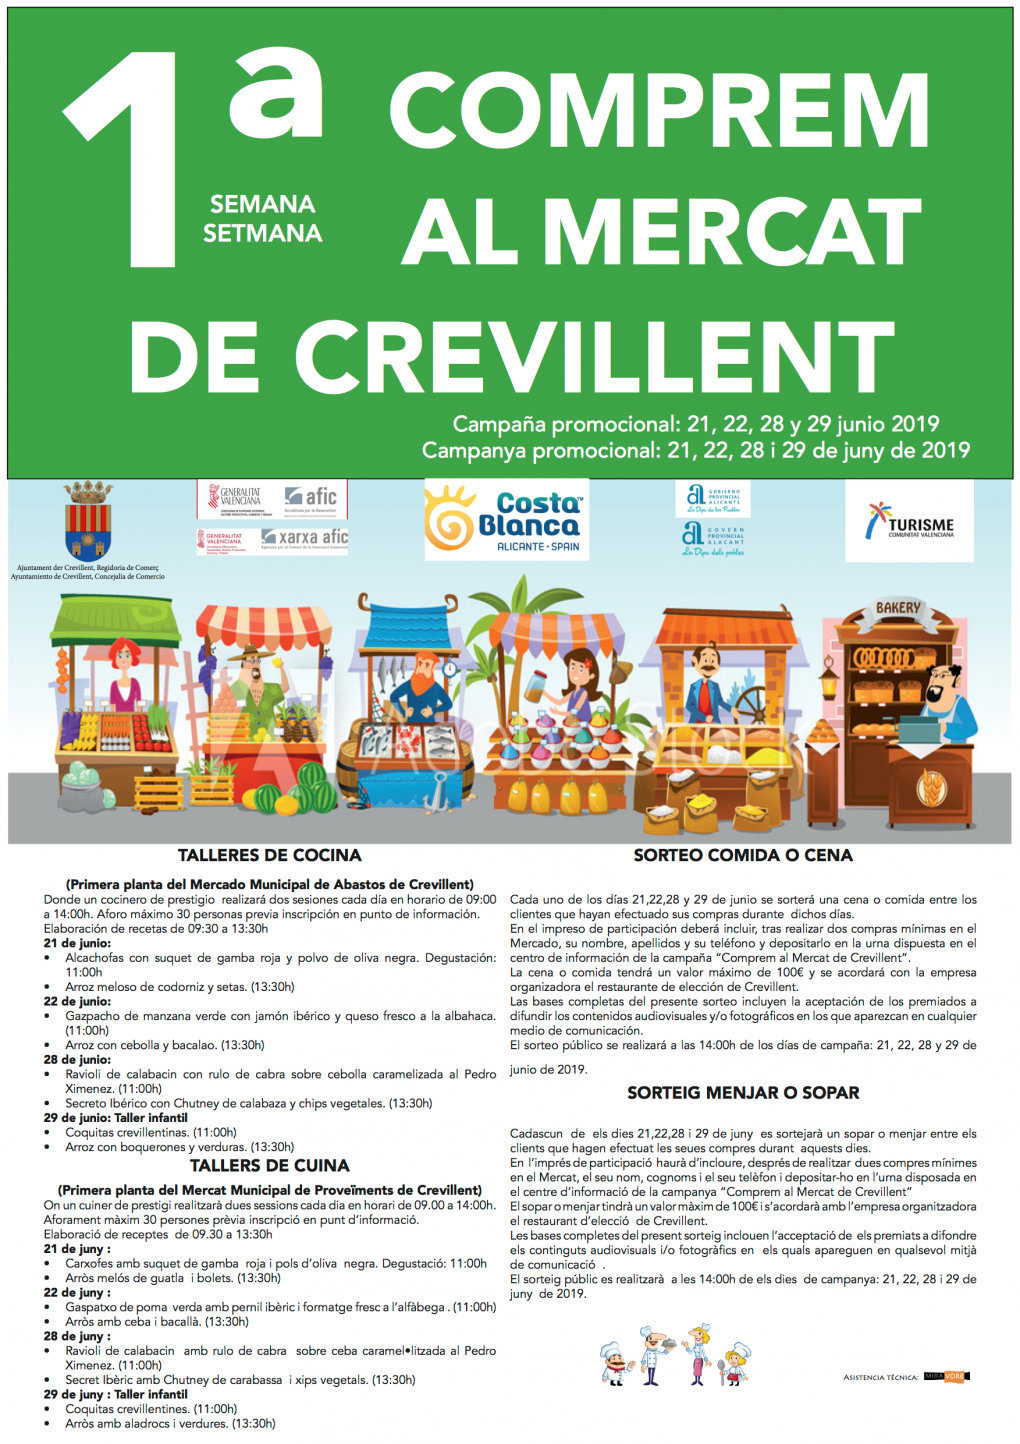 Las Concejalías de Economía Sostenible y Oportunidades y Comercio y Mercado inician la campaña promocional “1ª Semana Comprem al Mercat de Crevillent”